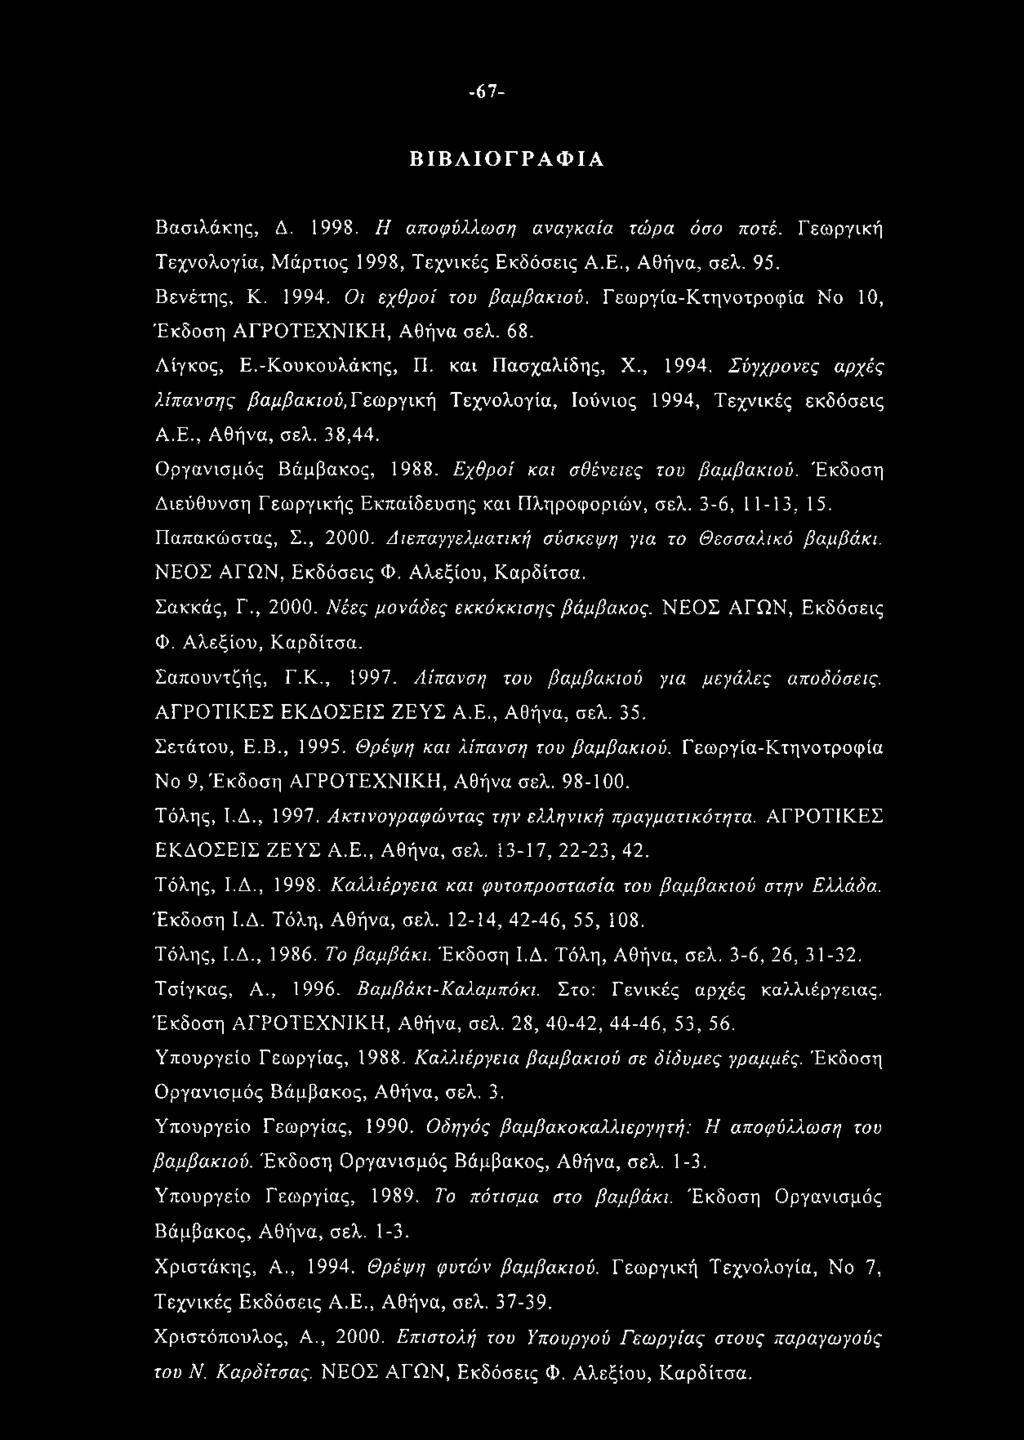 Σύγχρονες αρχές λίπανσης βαμβακιού, Γεωργική Τεχνολογία, Ιούνιος 1994, Τεχνικές εκδόσεις Α.Ε., Αθήνα, σελ. 38,44. Οργανισμός Βάμβακος, 1988. Εχθροί και σθένειες του βαμβακιού.